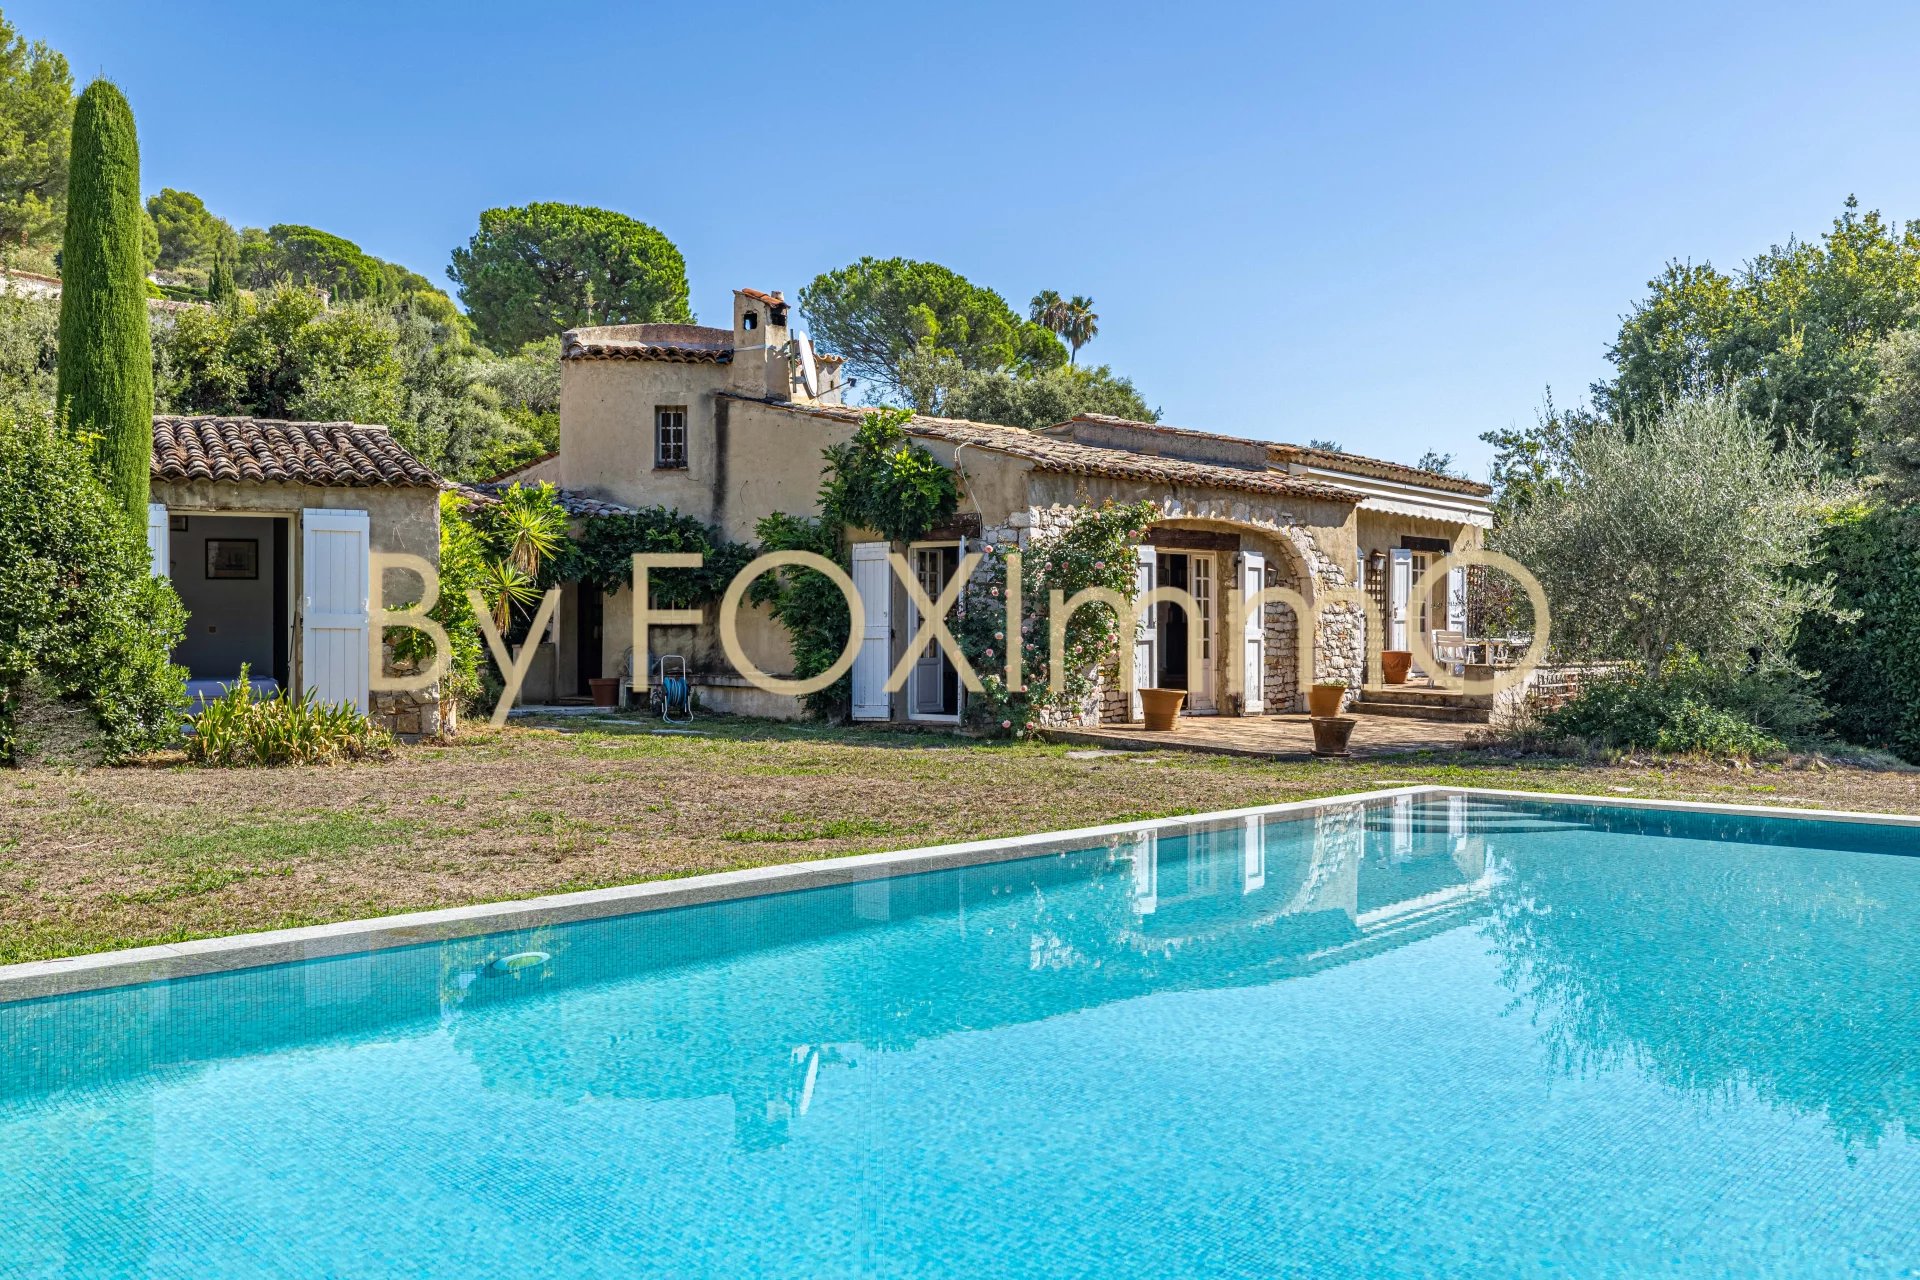 Villa provenzale indipendente, piscina a sfioro, giardino pianeggiante, quartiere residenziale.